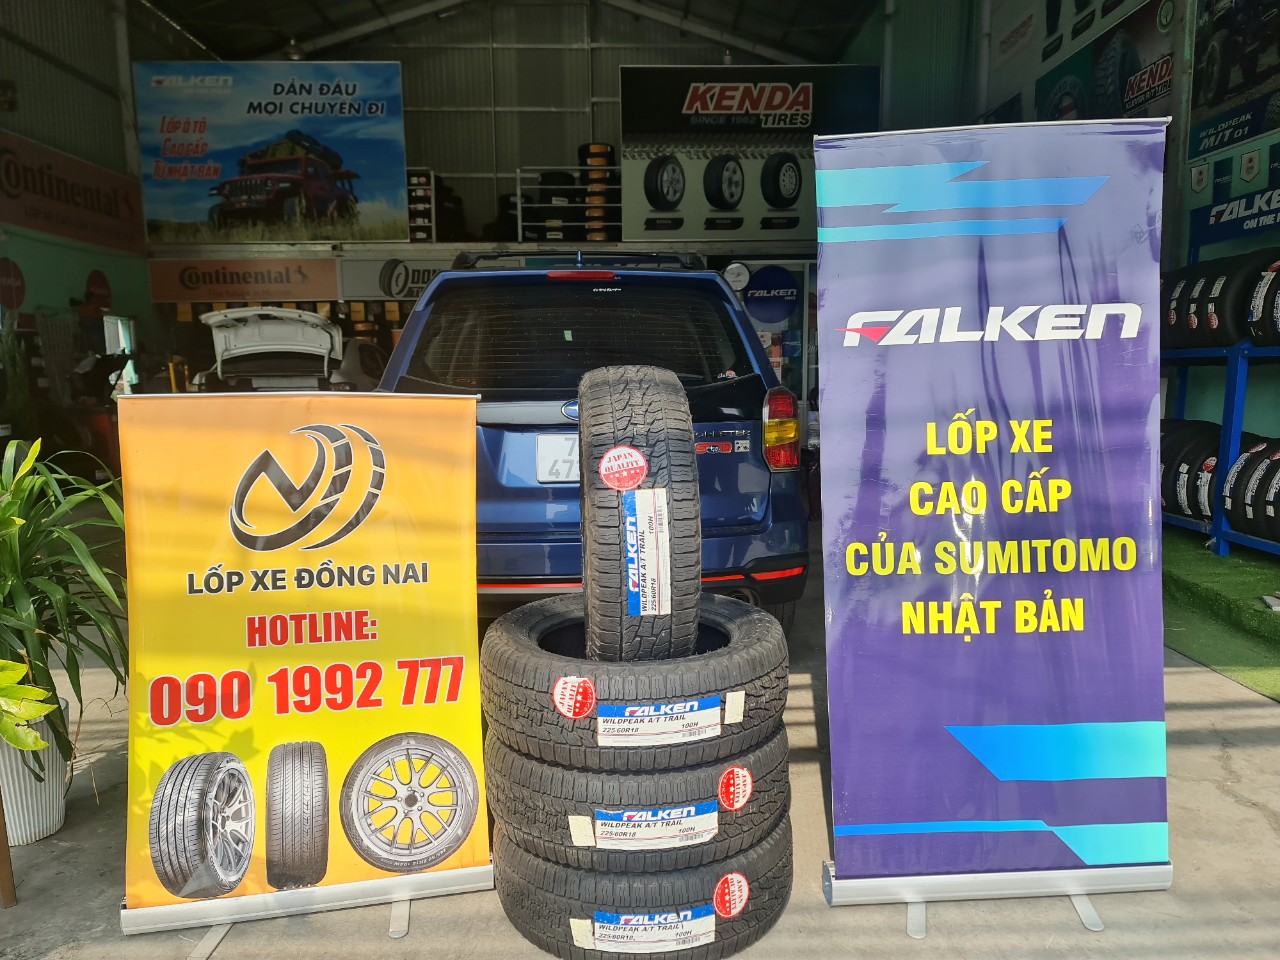 TƯ VẤN : Thay lốp xe Subaru Forester ở Trảng Bom, Đồng Nai.